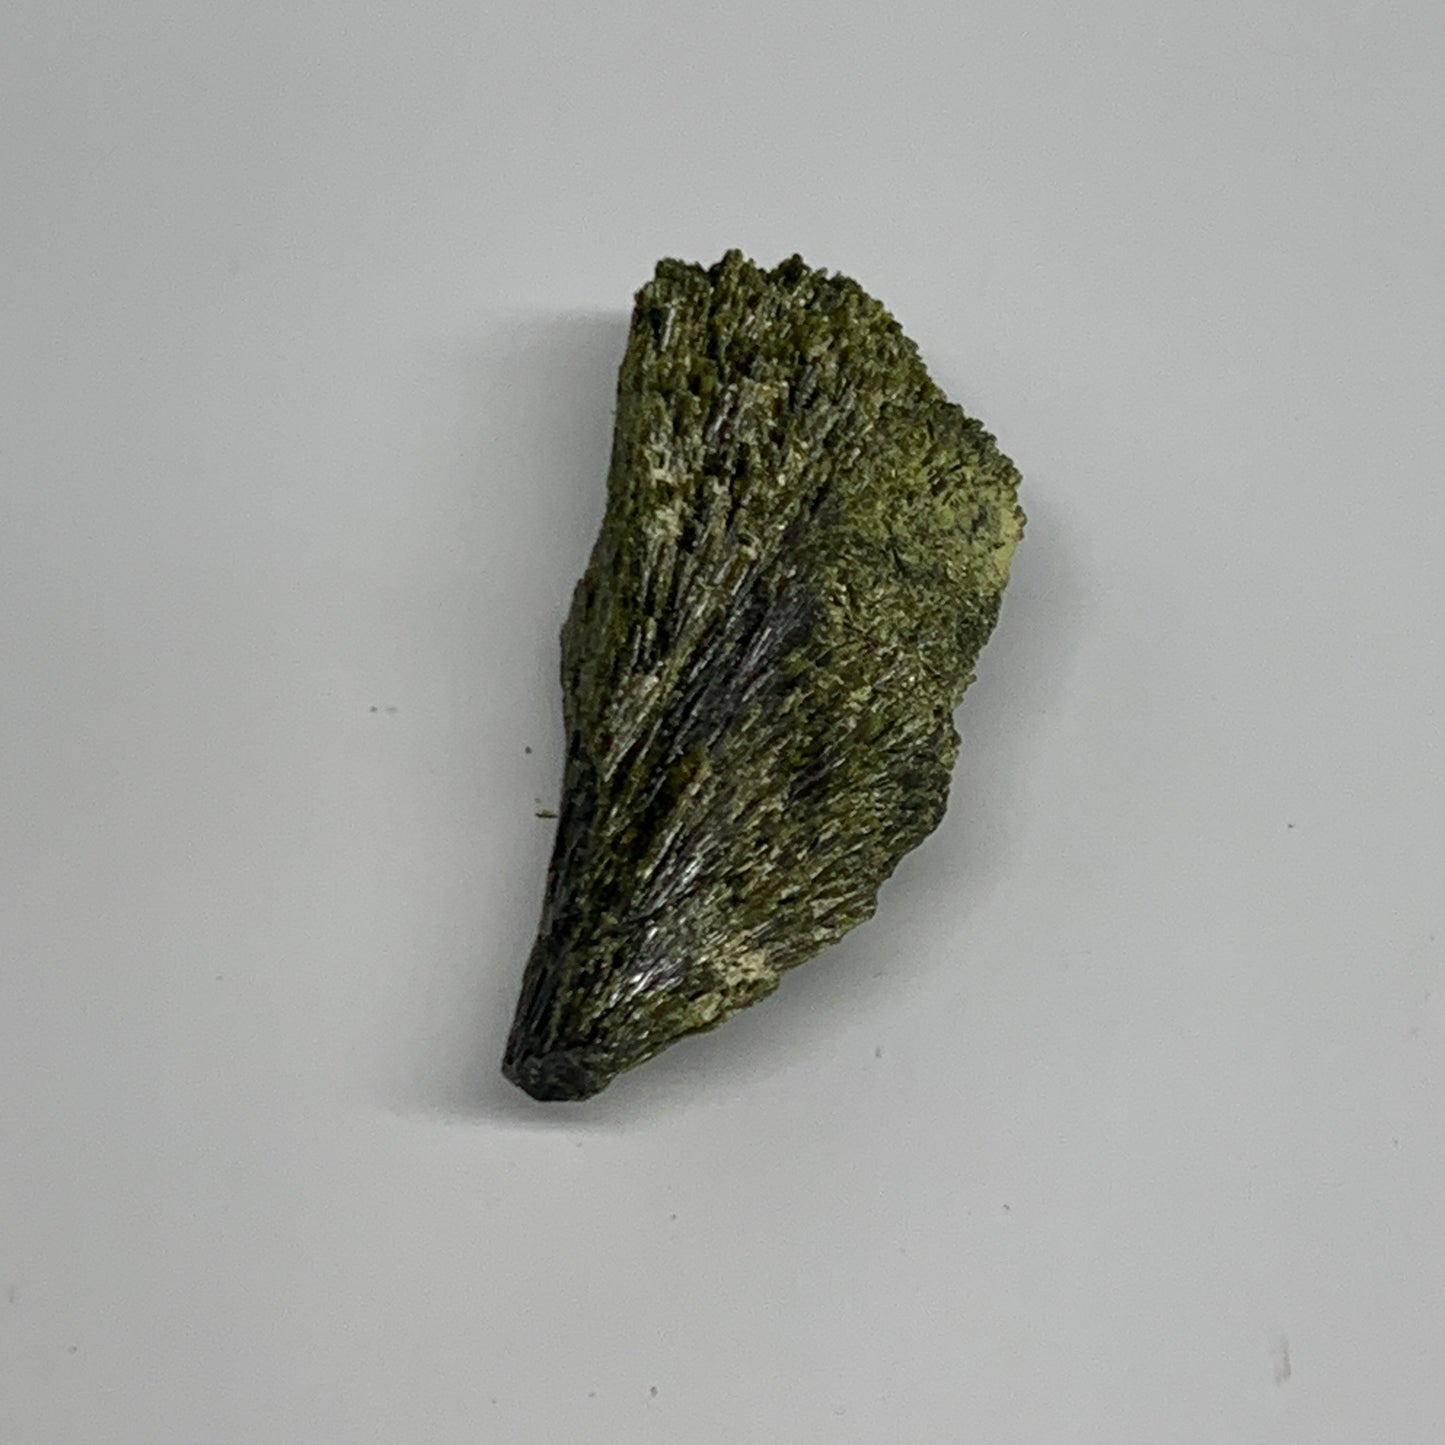 40.3g,2.4"x1"x0.7",Green Epidote Custer/Leaf Mineral Specimen @Pakistan,B27591